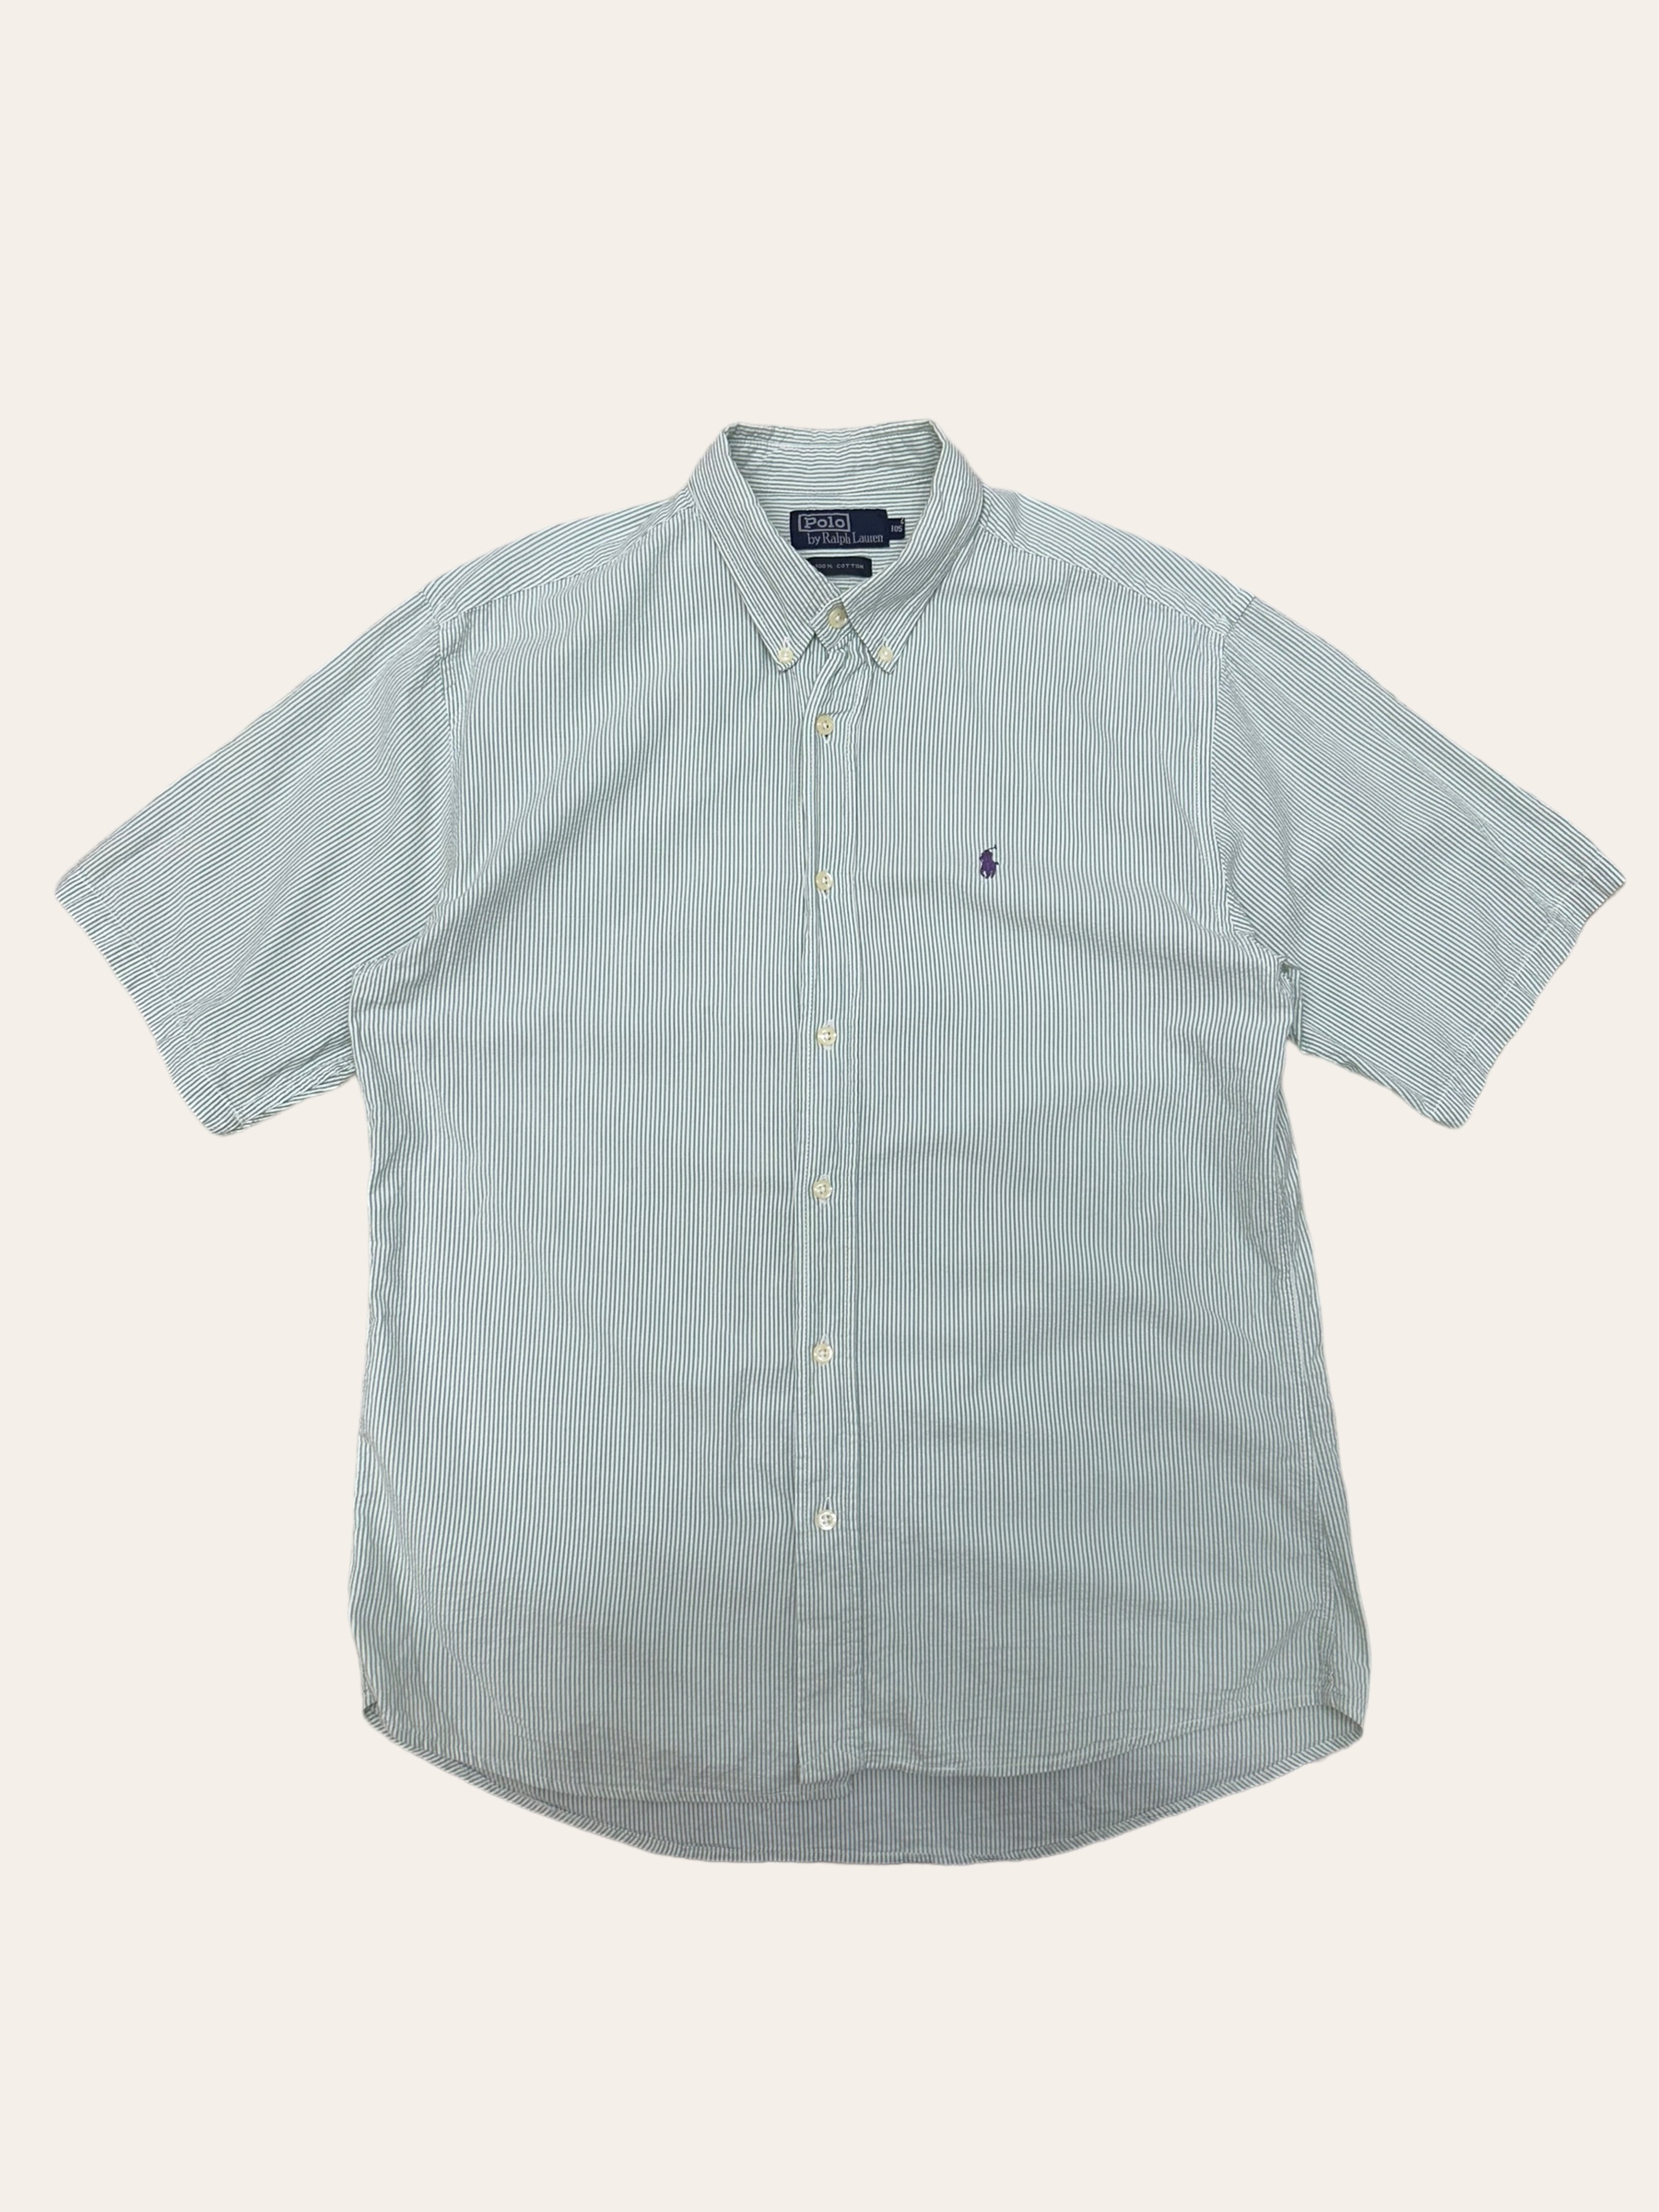 (From USA)Polo ralph lauren green stripe seersucker short sleeve shirt 105